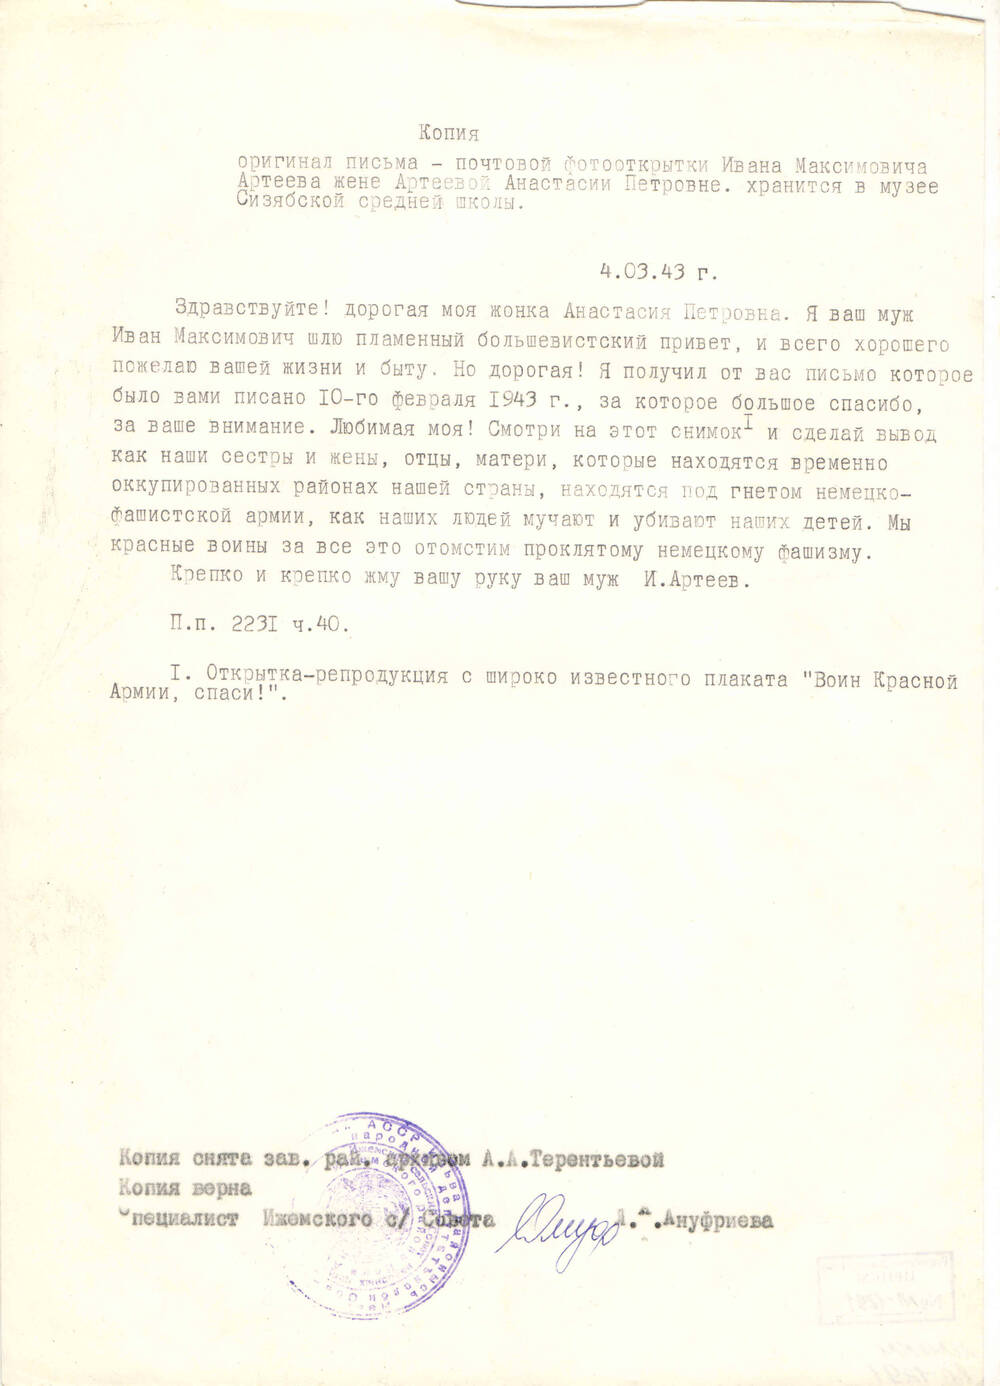 Копия письма на почтовой фотооткрытке Артеева И.М. жене Артеевой А.П. от 04.03.1943 года (оригинал хранится в Сизябской СШ)